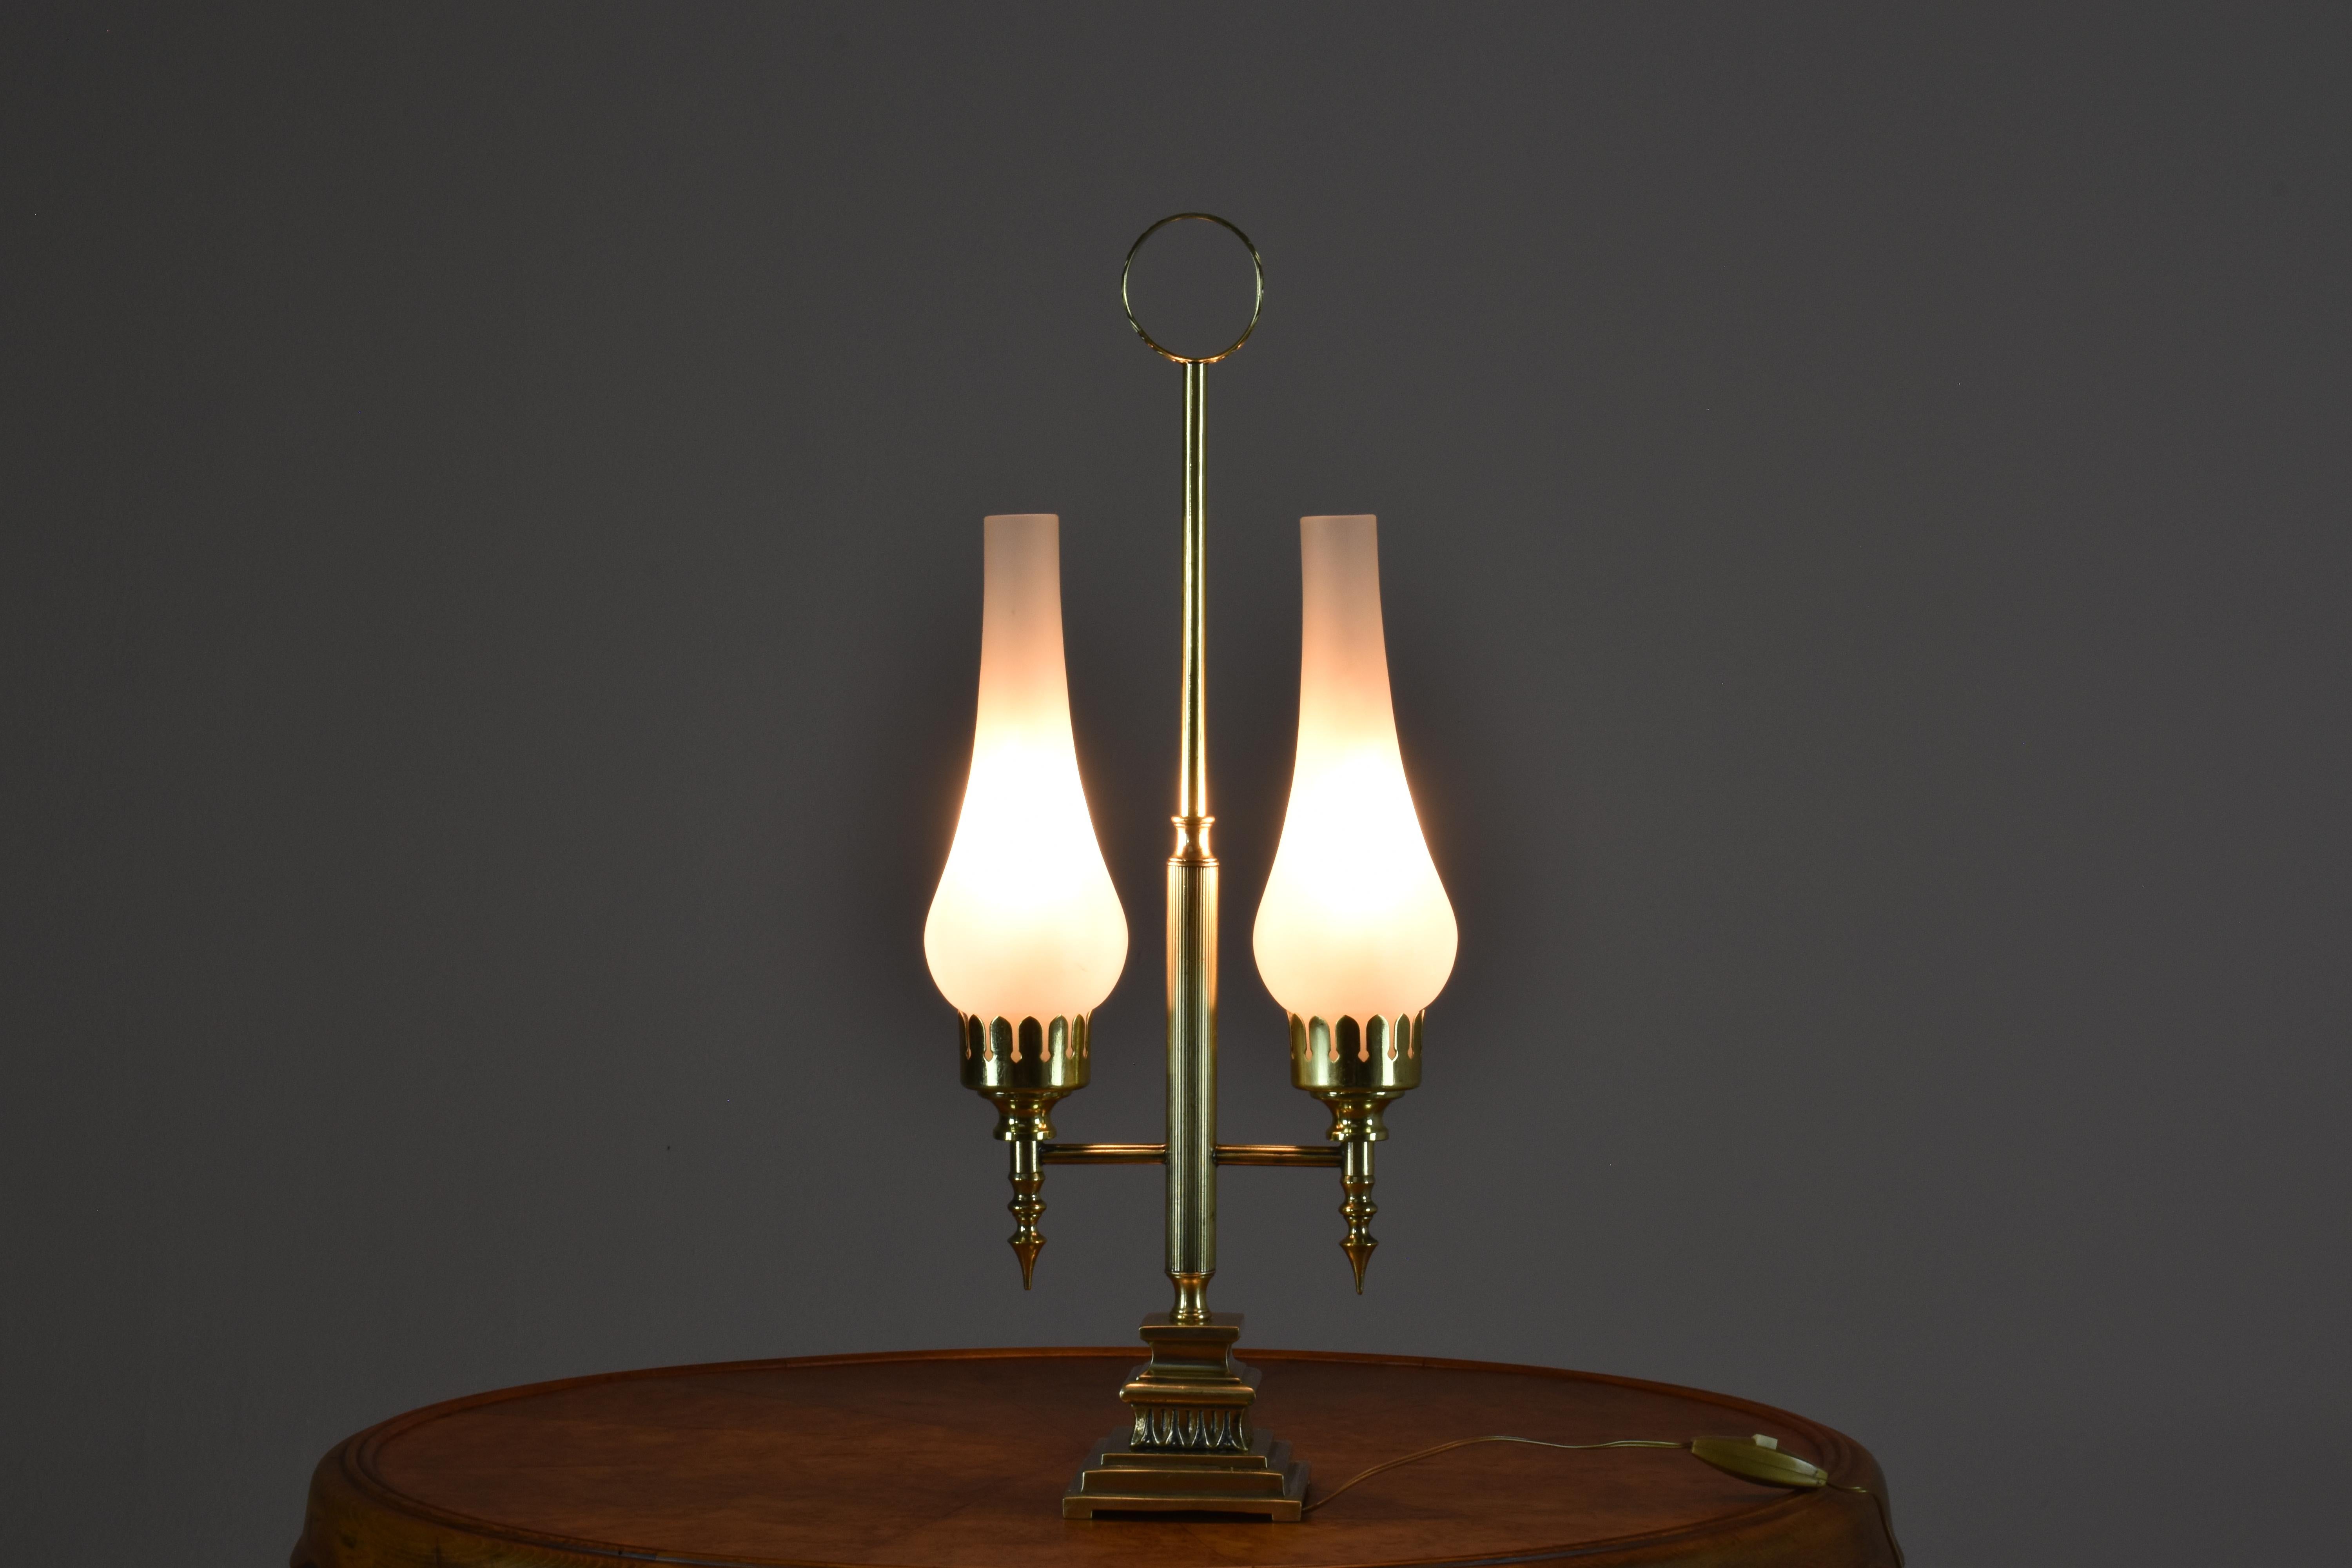  Lampe italienne des années 1960 dotée de deux abat-jours en verre sablé. La structure complexe en laiton au centre est caractérisée par des motifs Art déco classiques et ornementaux. Il présente des formes élégantes et géométriques, des matériaux